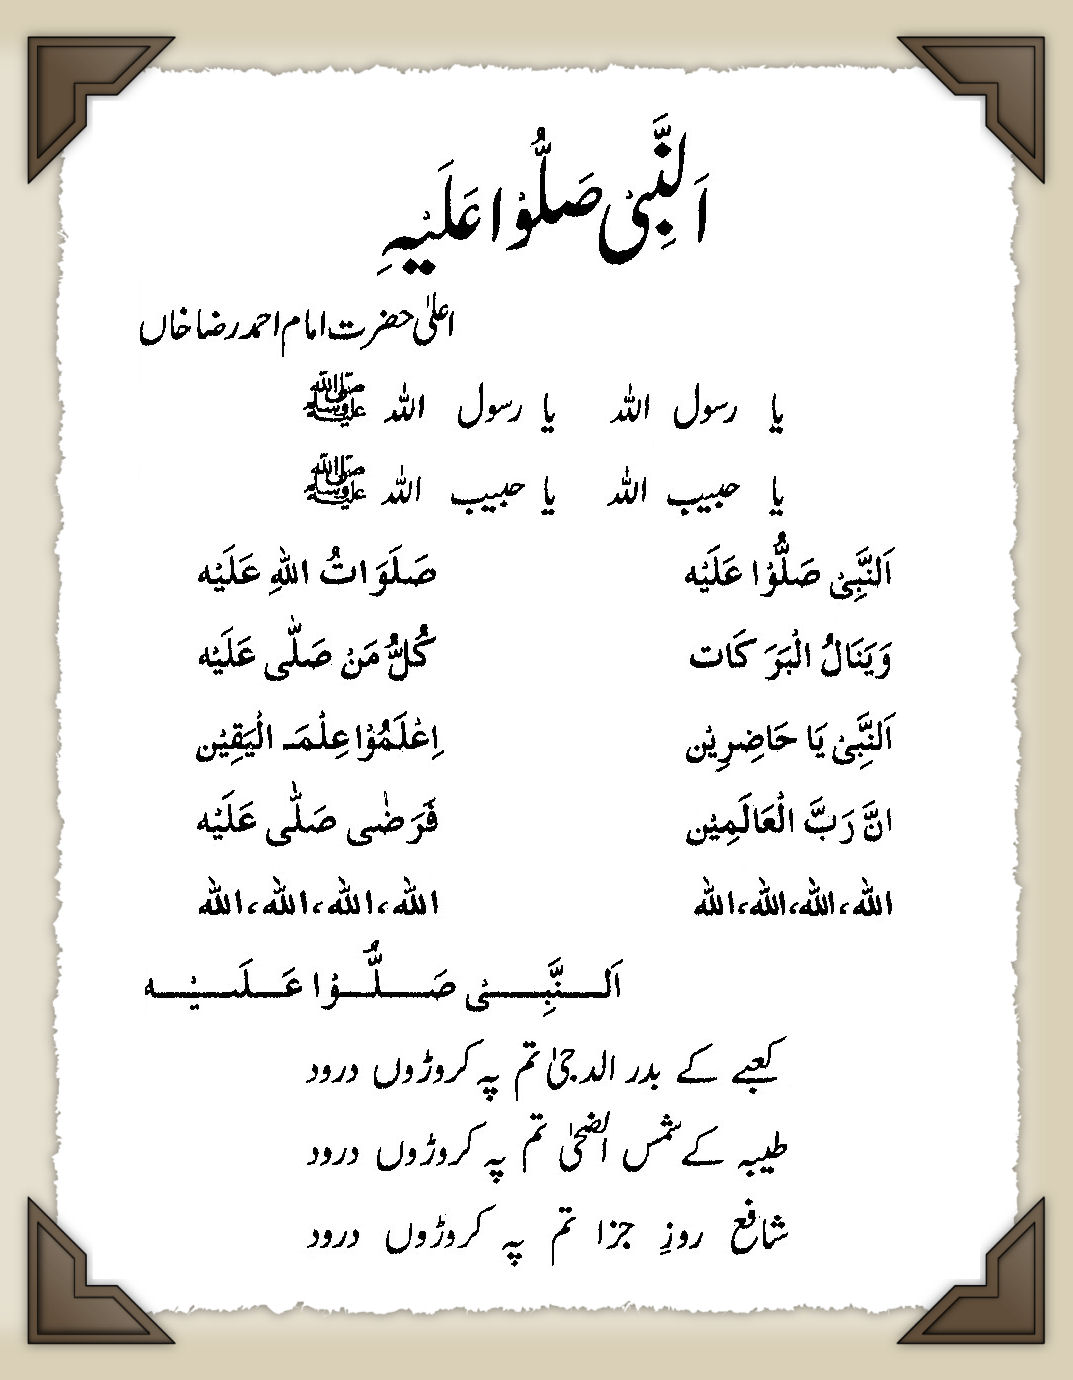 An nabi sallu alaih lyrics